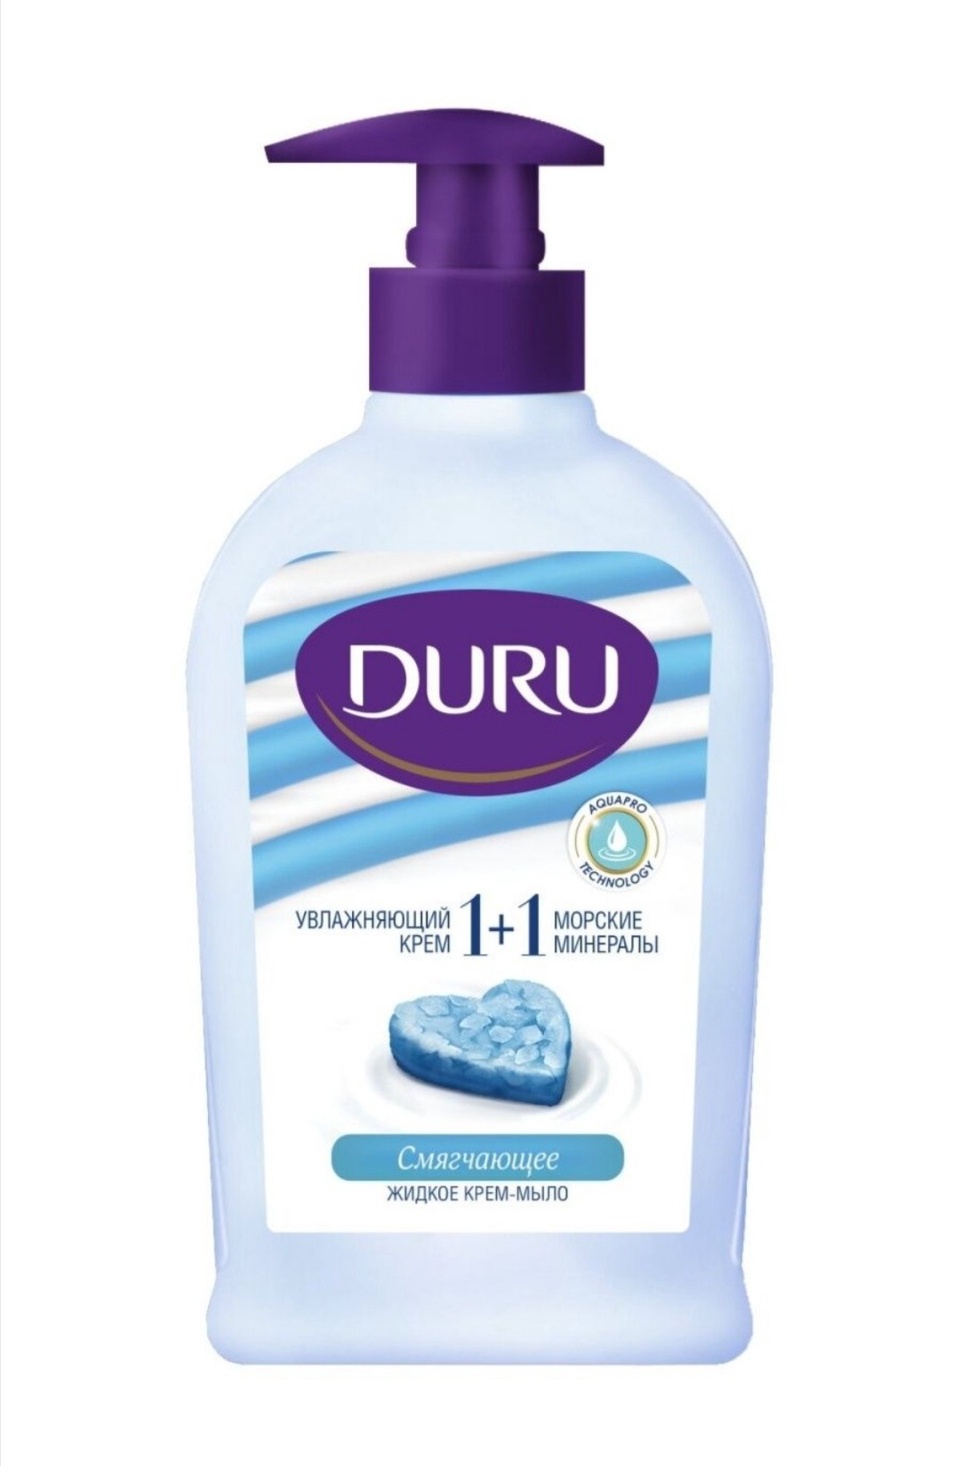 DURU жидкое крем-мыло и морские минералы - 140 ₽, заказать онлайн.